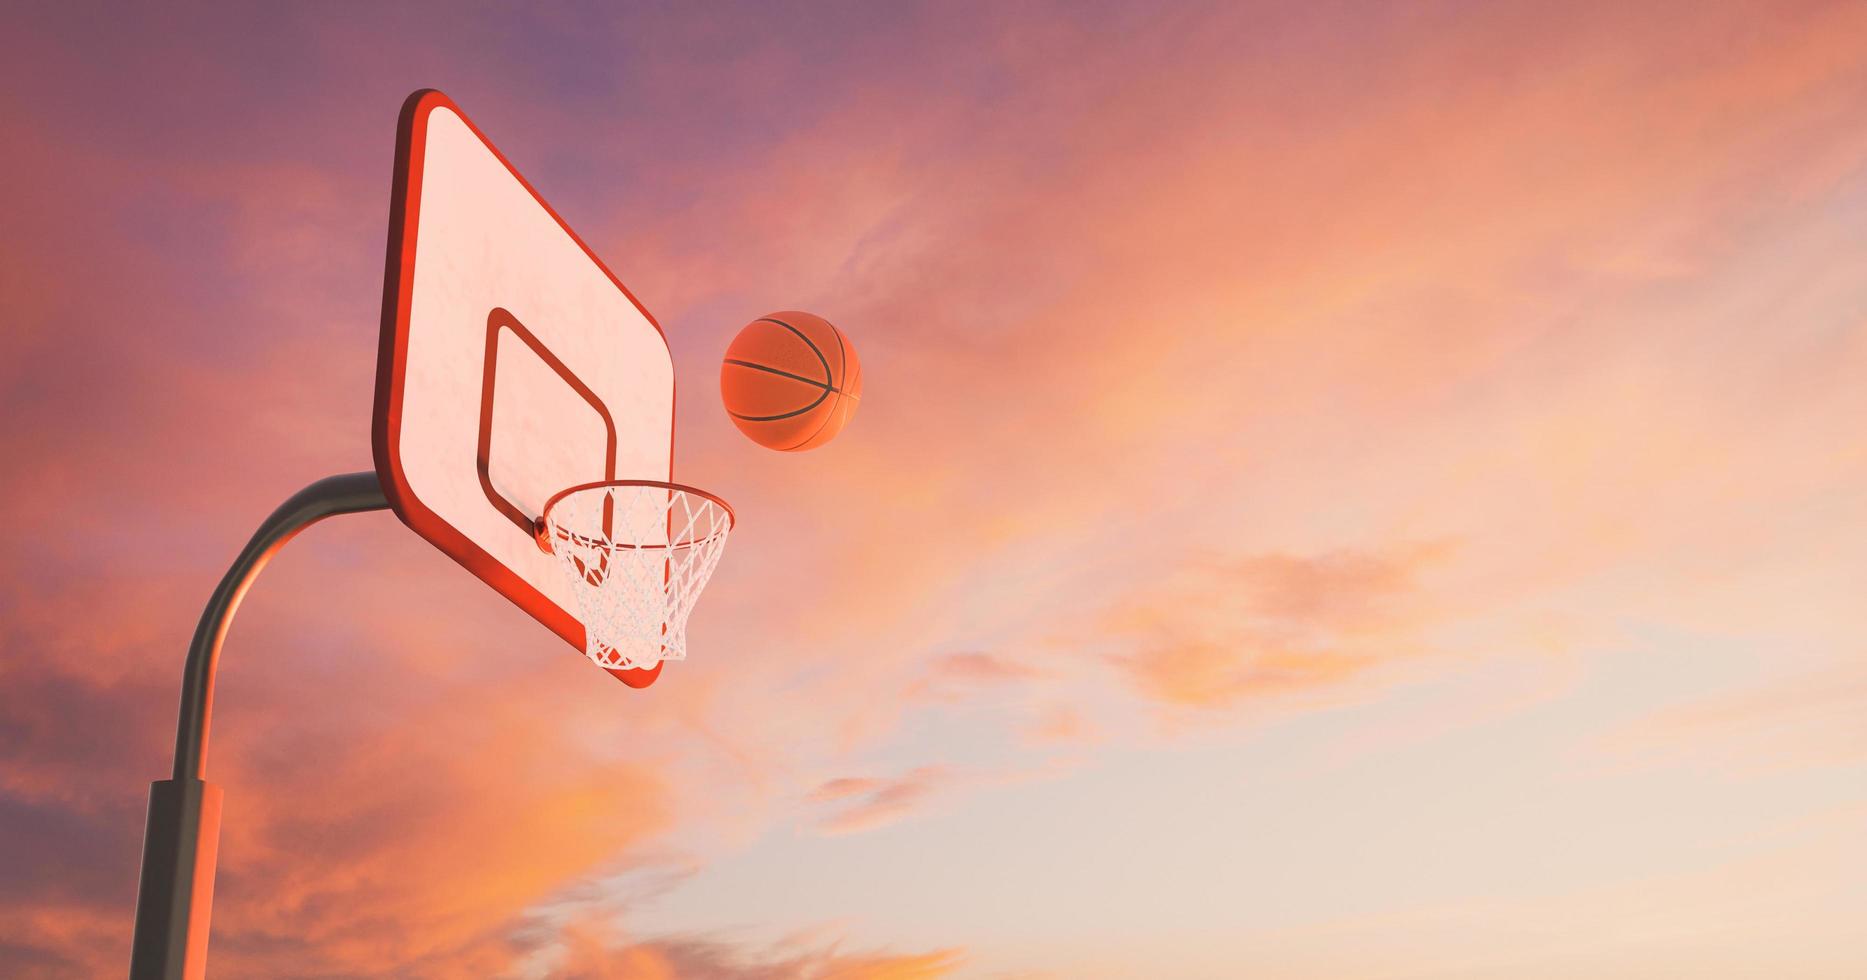 Canasta de baloncesto sobre una cálida puesta de sol con nubes y la pelota cayendo en el aro, 3D rendering foto